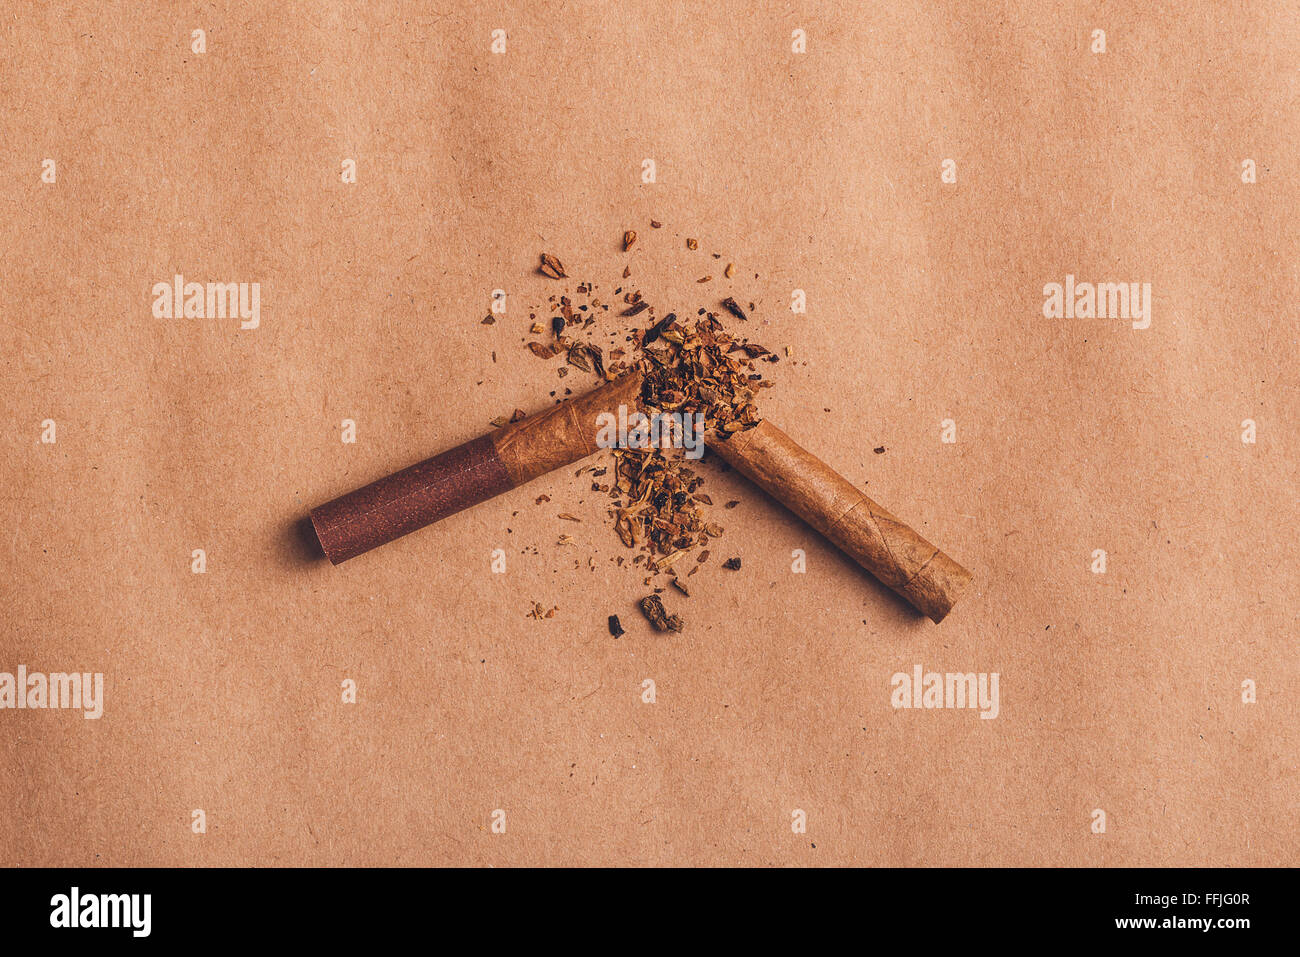 Rotto cigarette top vista su carta marrone, smettere di fumare concetto, calda retrò tono dell'immagine. Foto Stock